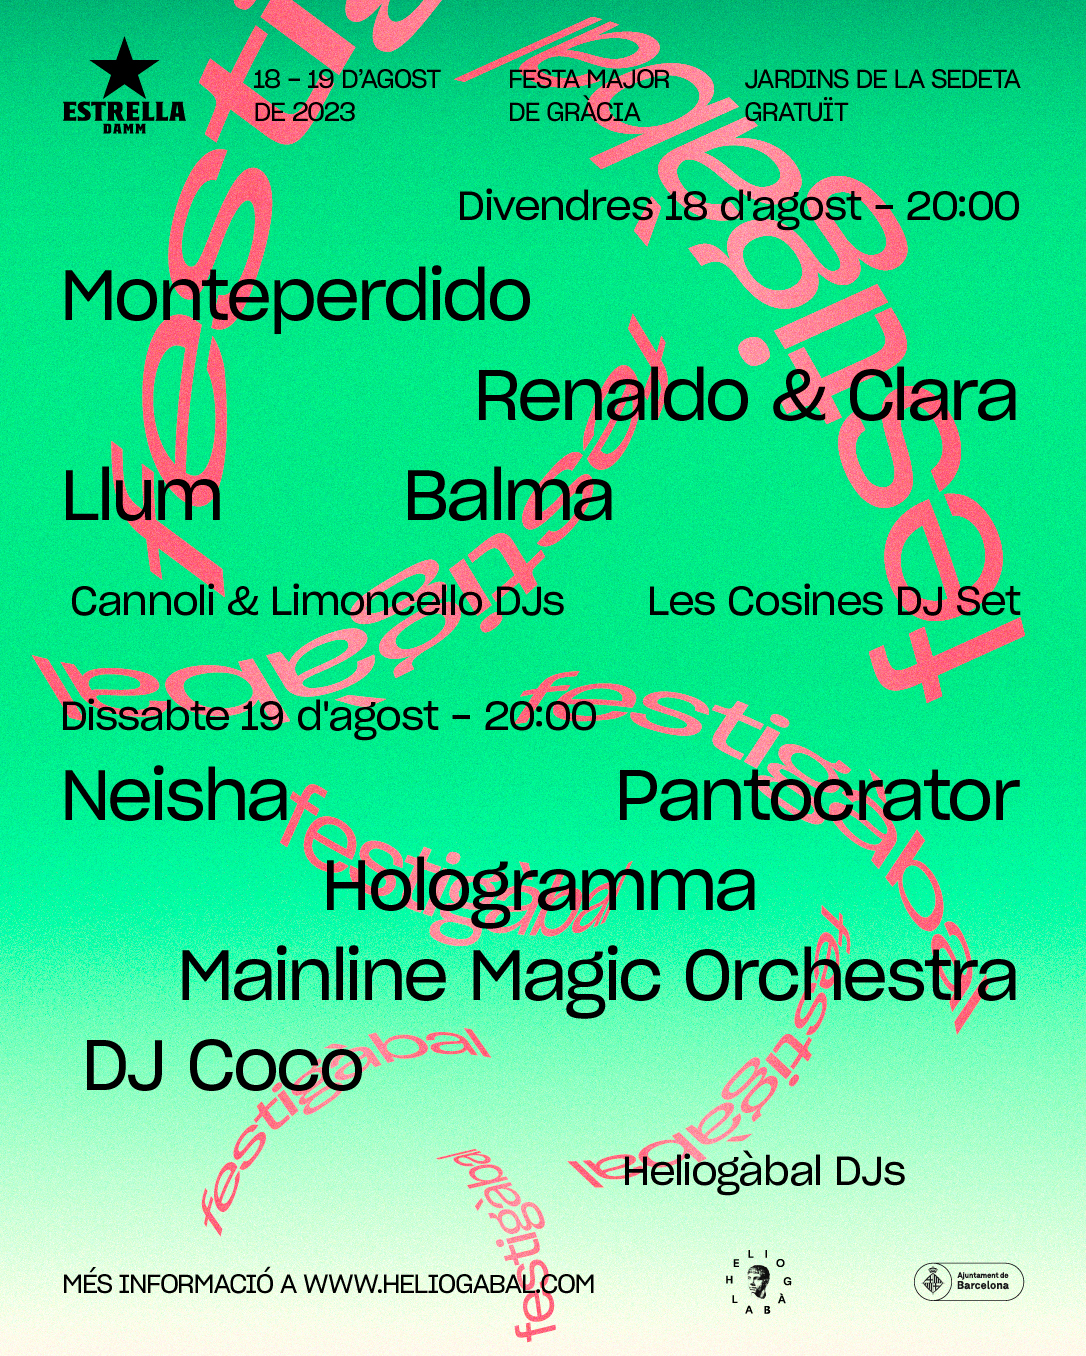 Festiàbal's poster for the 2023 Festes de Gràcia